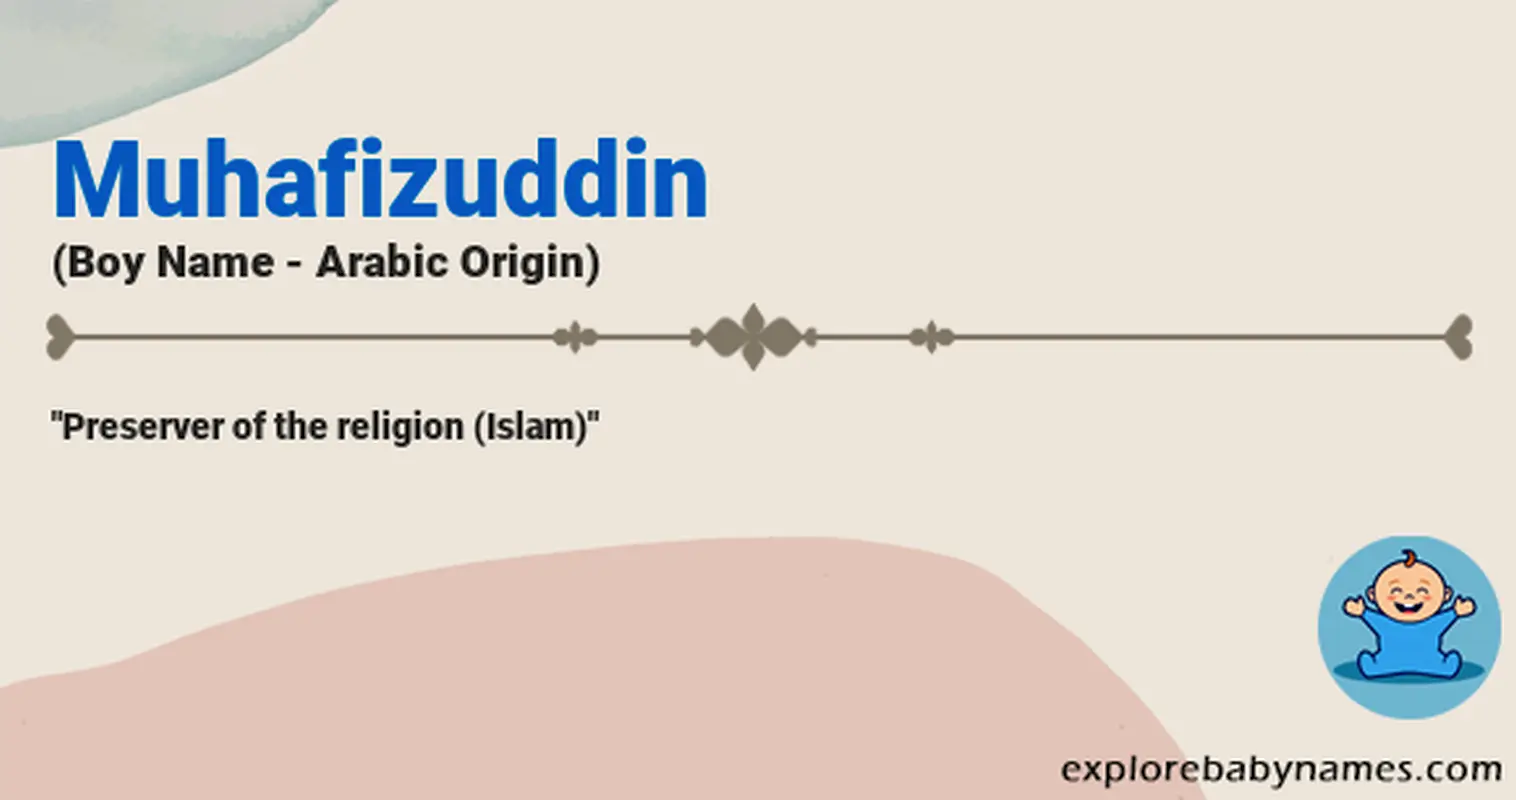 Meaning of Muhafizuddin